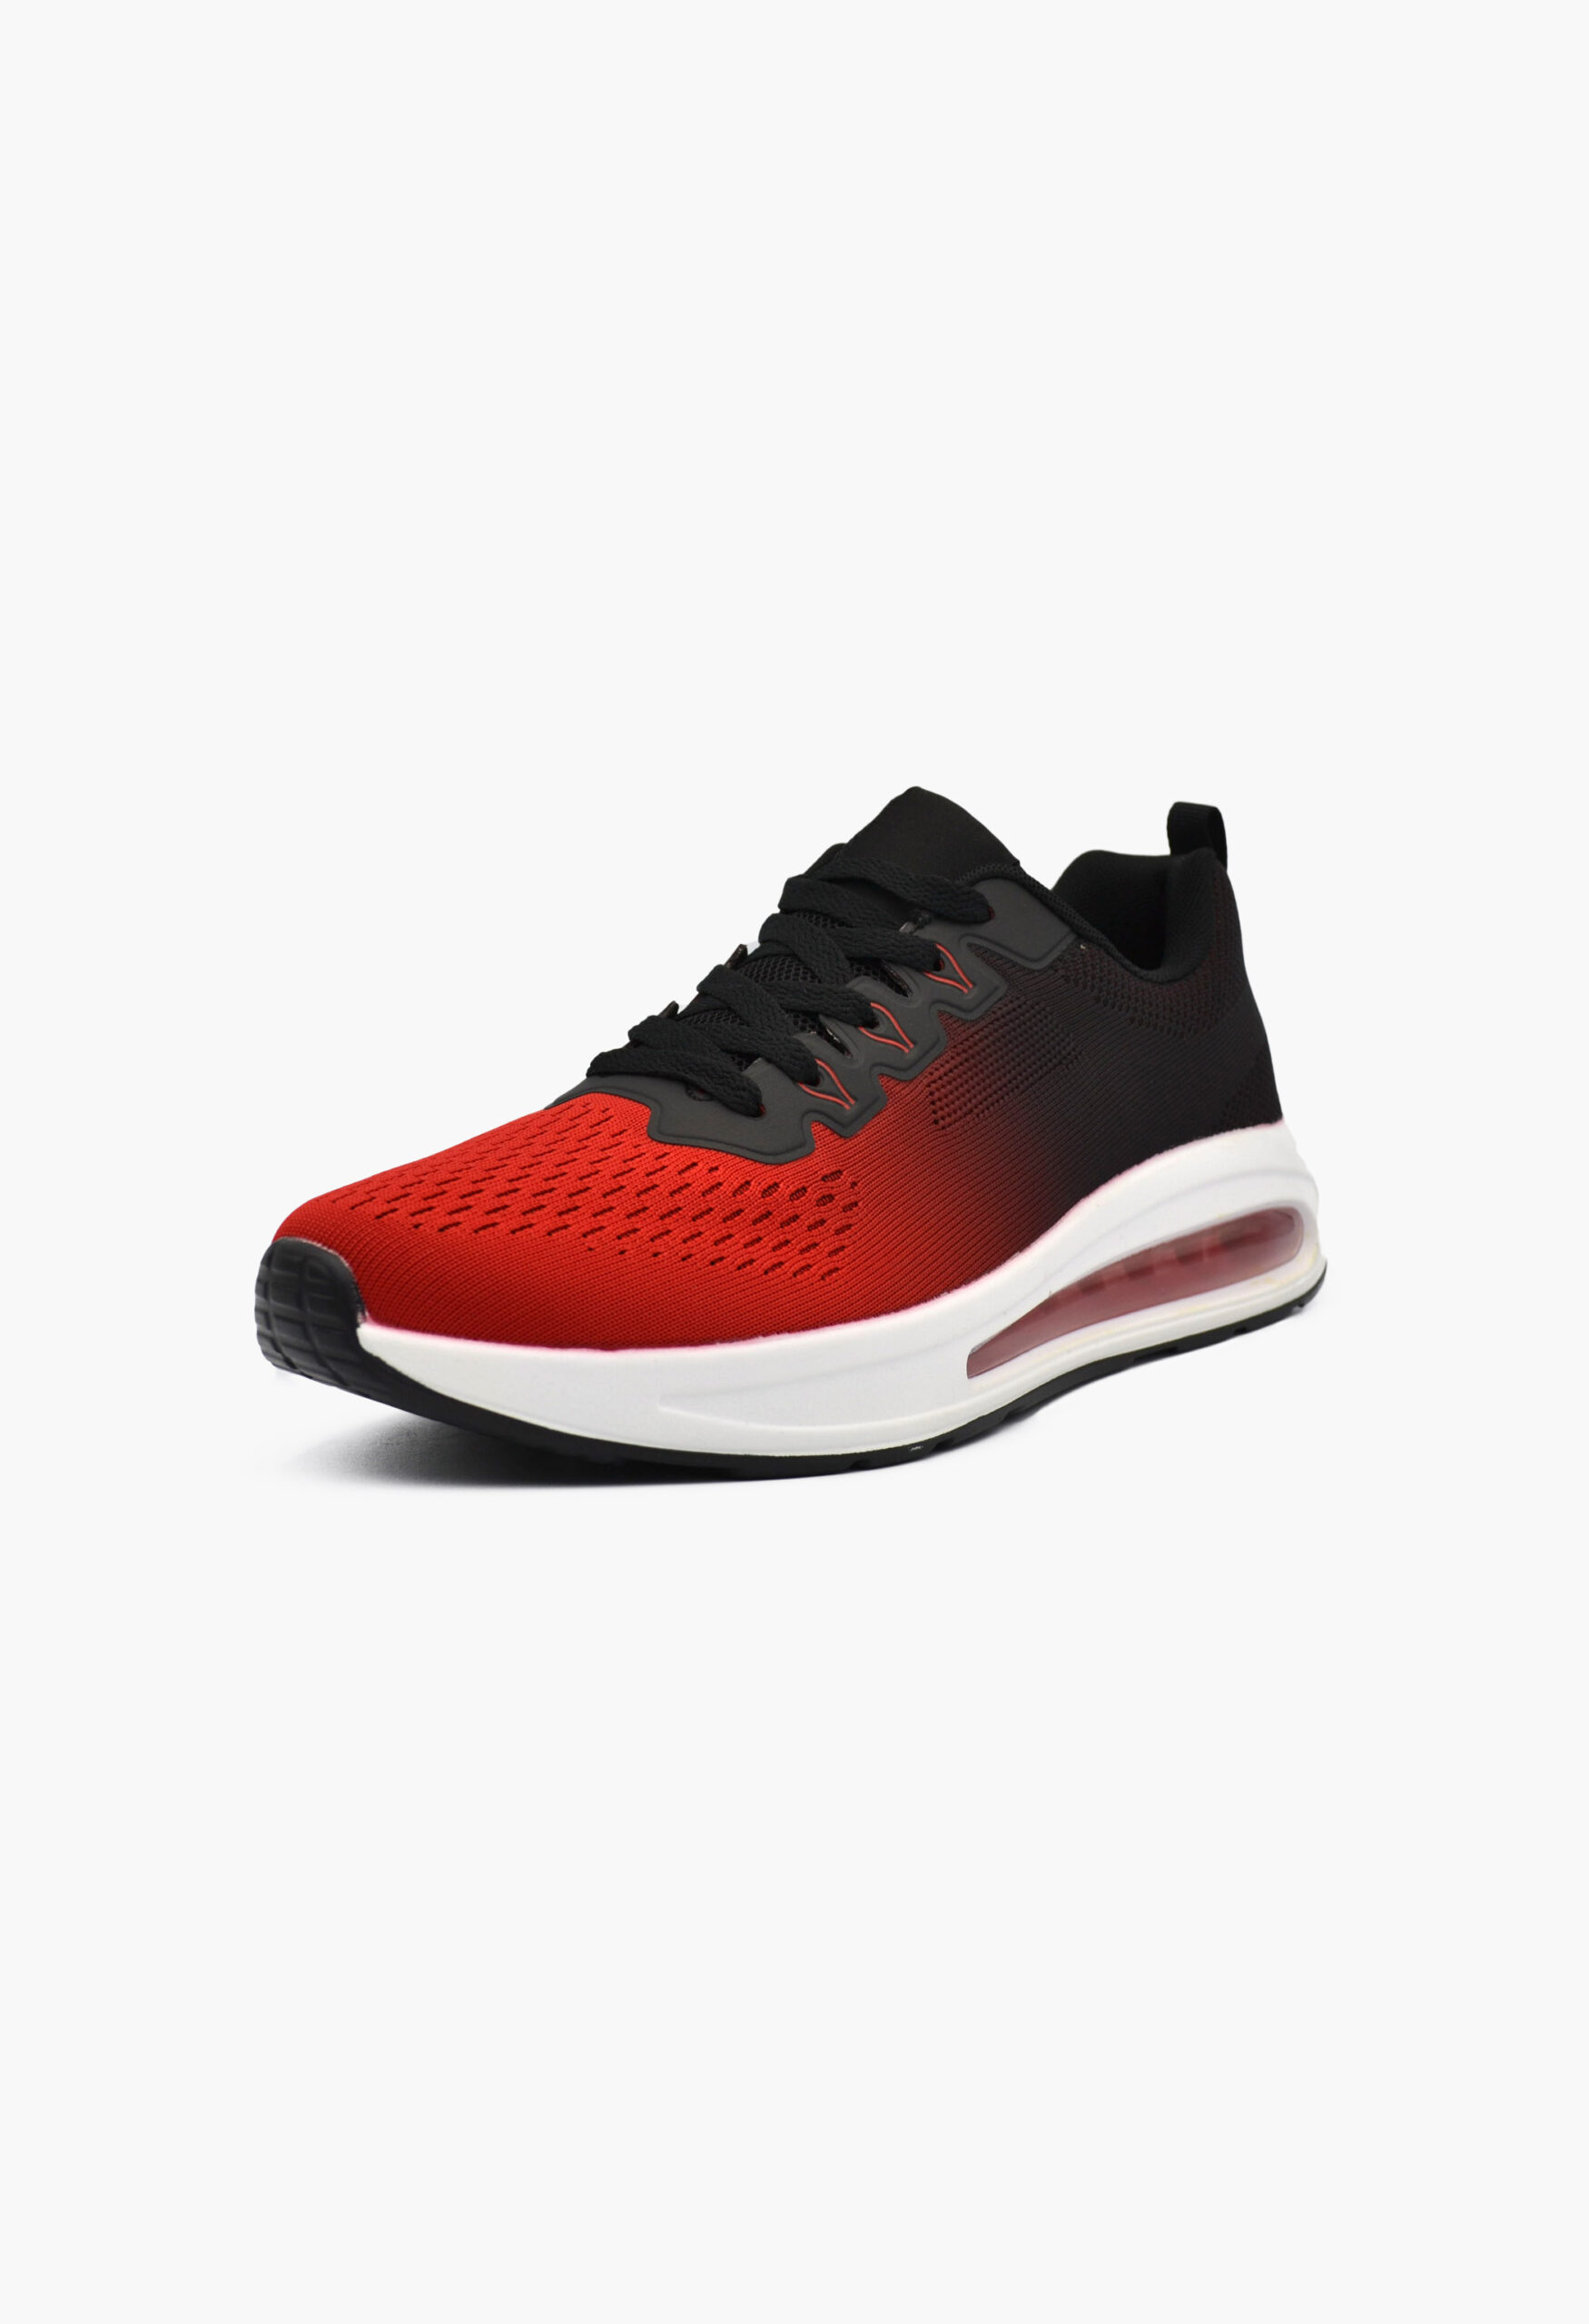 Ανδρικά Αθλητικά Παπούτσια για Τρέξιμο Κόκκινο / U1227-10-red/black ΠΡΟΣΦΟΡΕΣ joya.gr